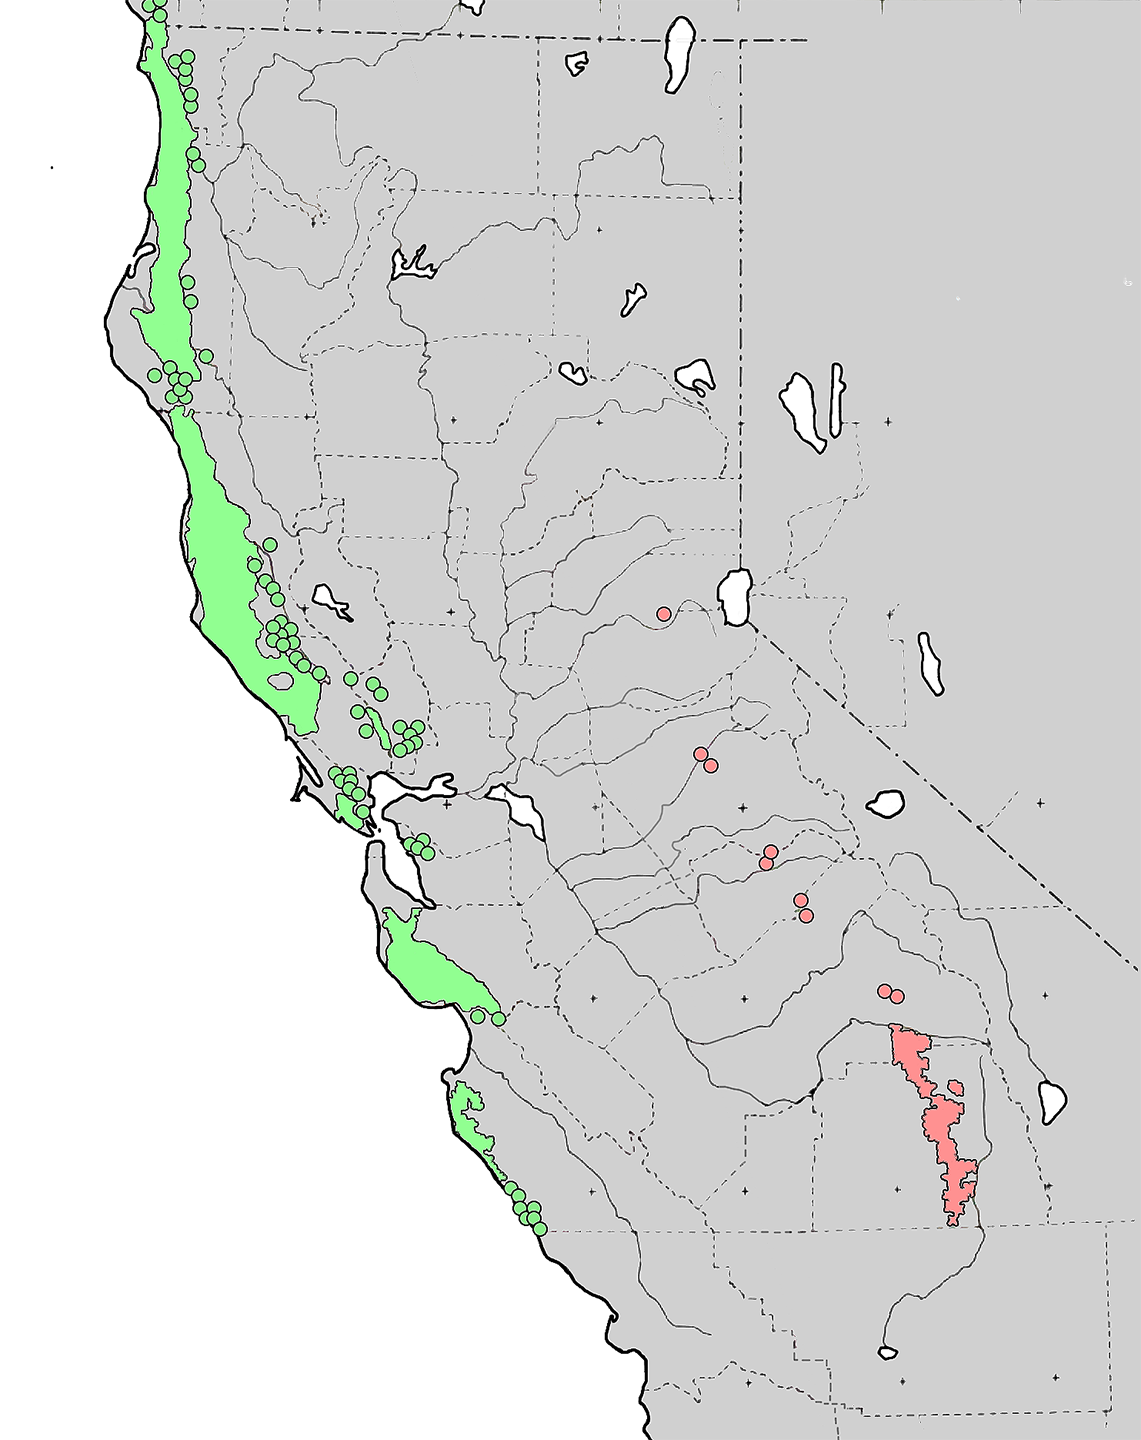 Секвойя природная зона северной америки. Ареал секвойядендрона гигантского. Ареал секвойи вечнозеленой. Дерево Секвойя на карте Северной Америки. Ареал произрастания секвойи на карте.